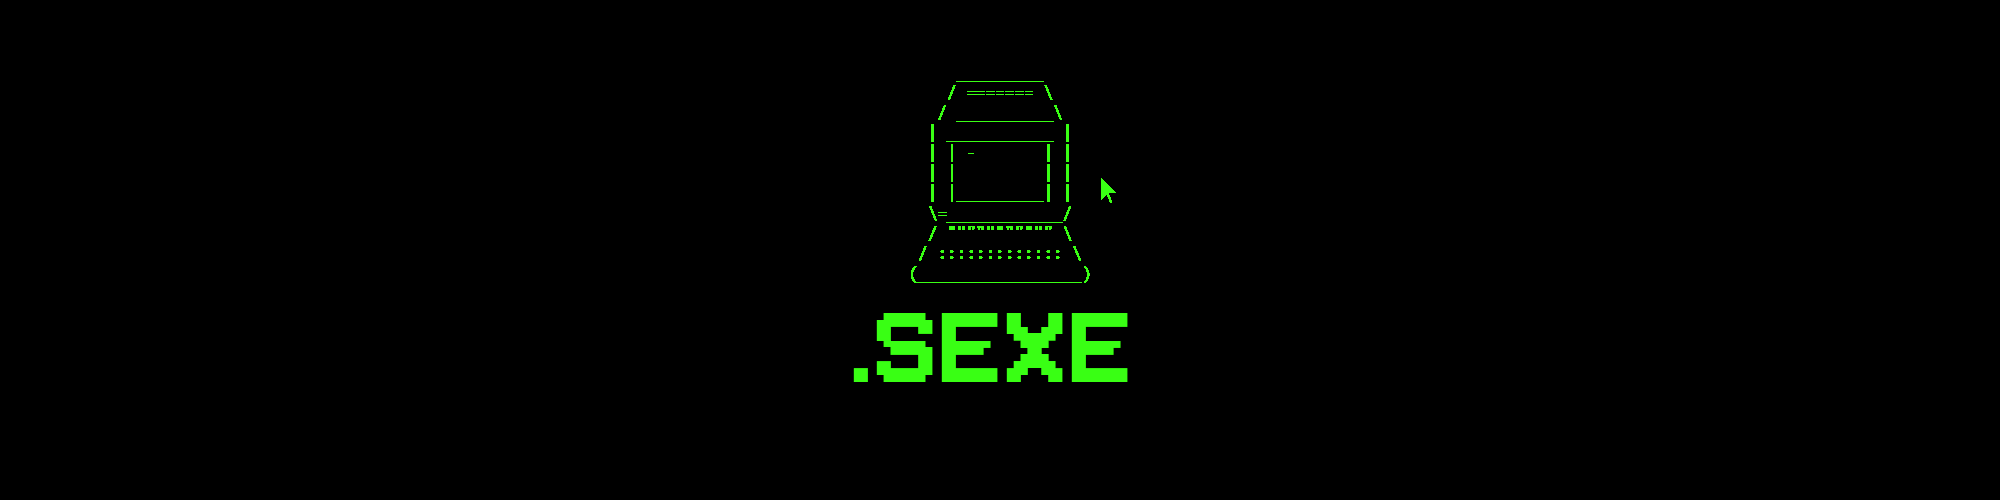 .sexe